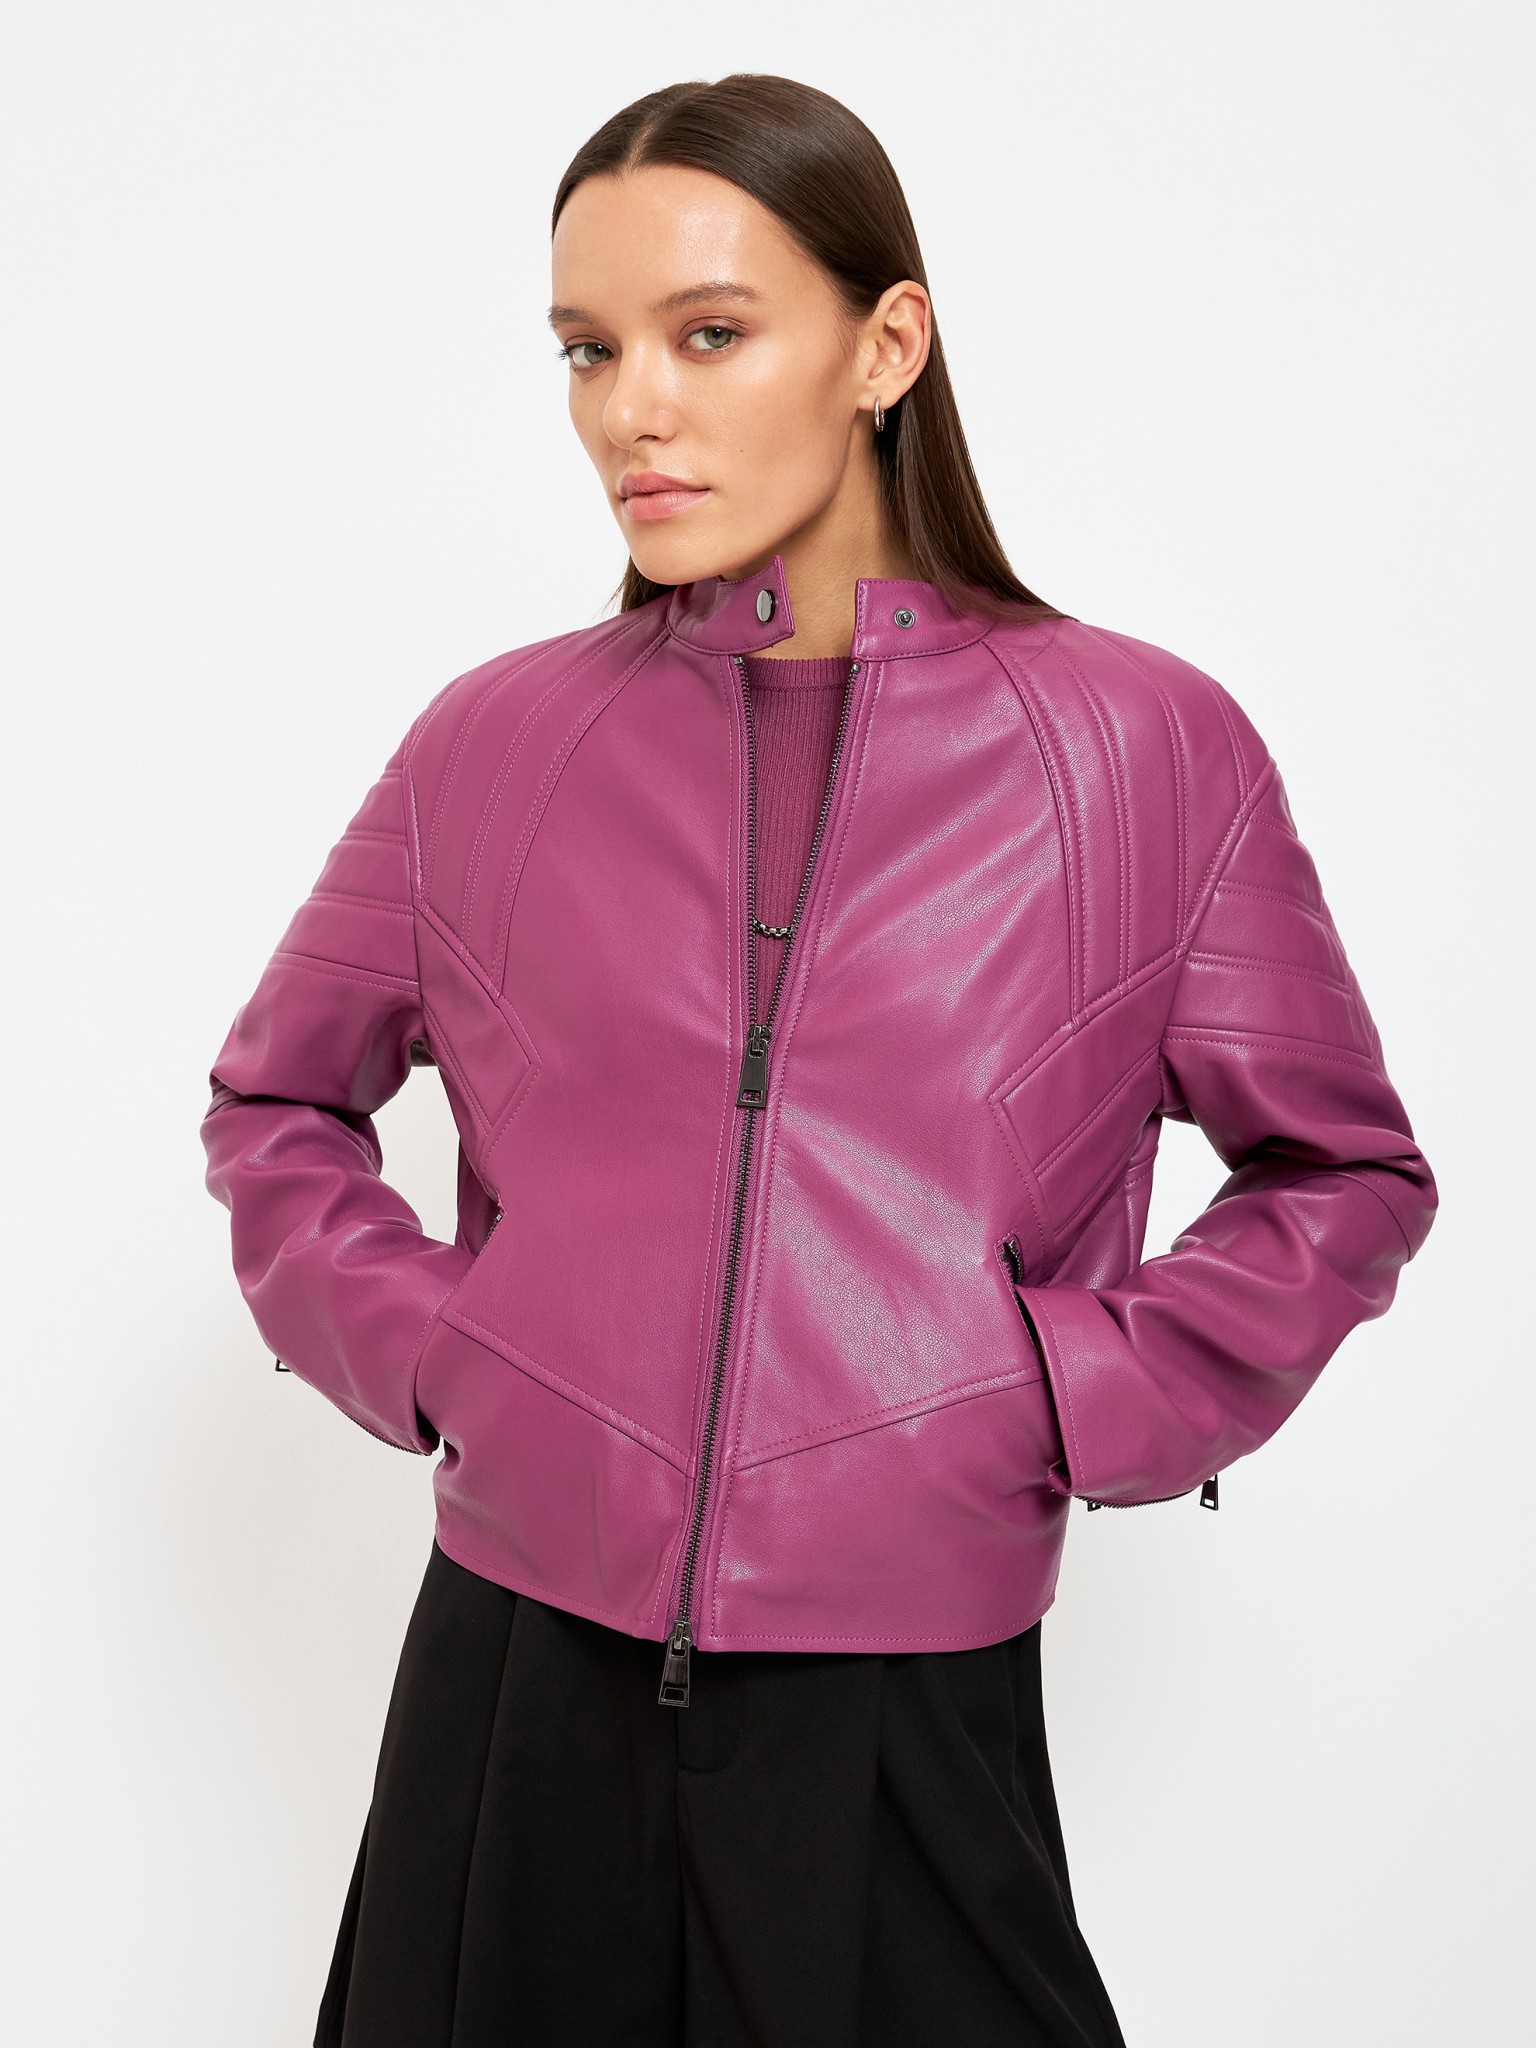 Кожаная куртка женская Concept Club 10200130342 розовая L